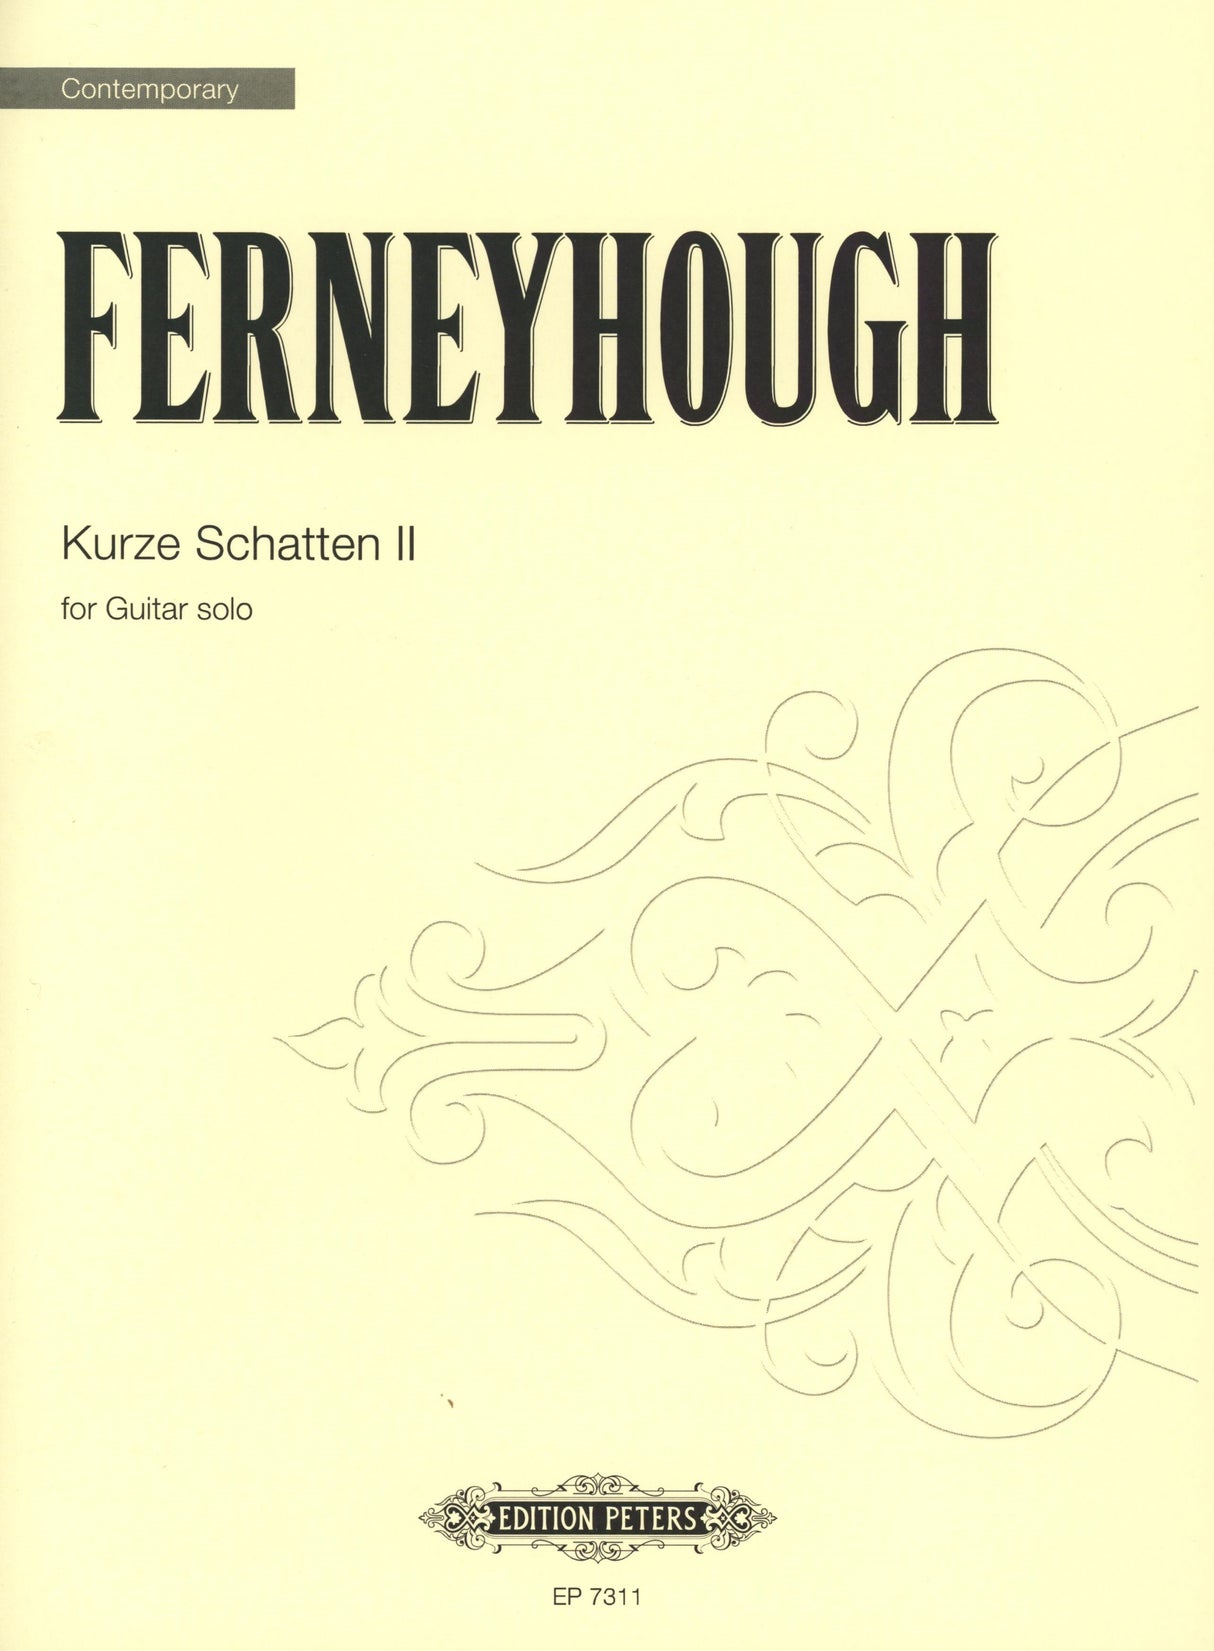 Ferneyhough: Kurze Schatten II